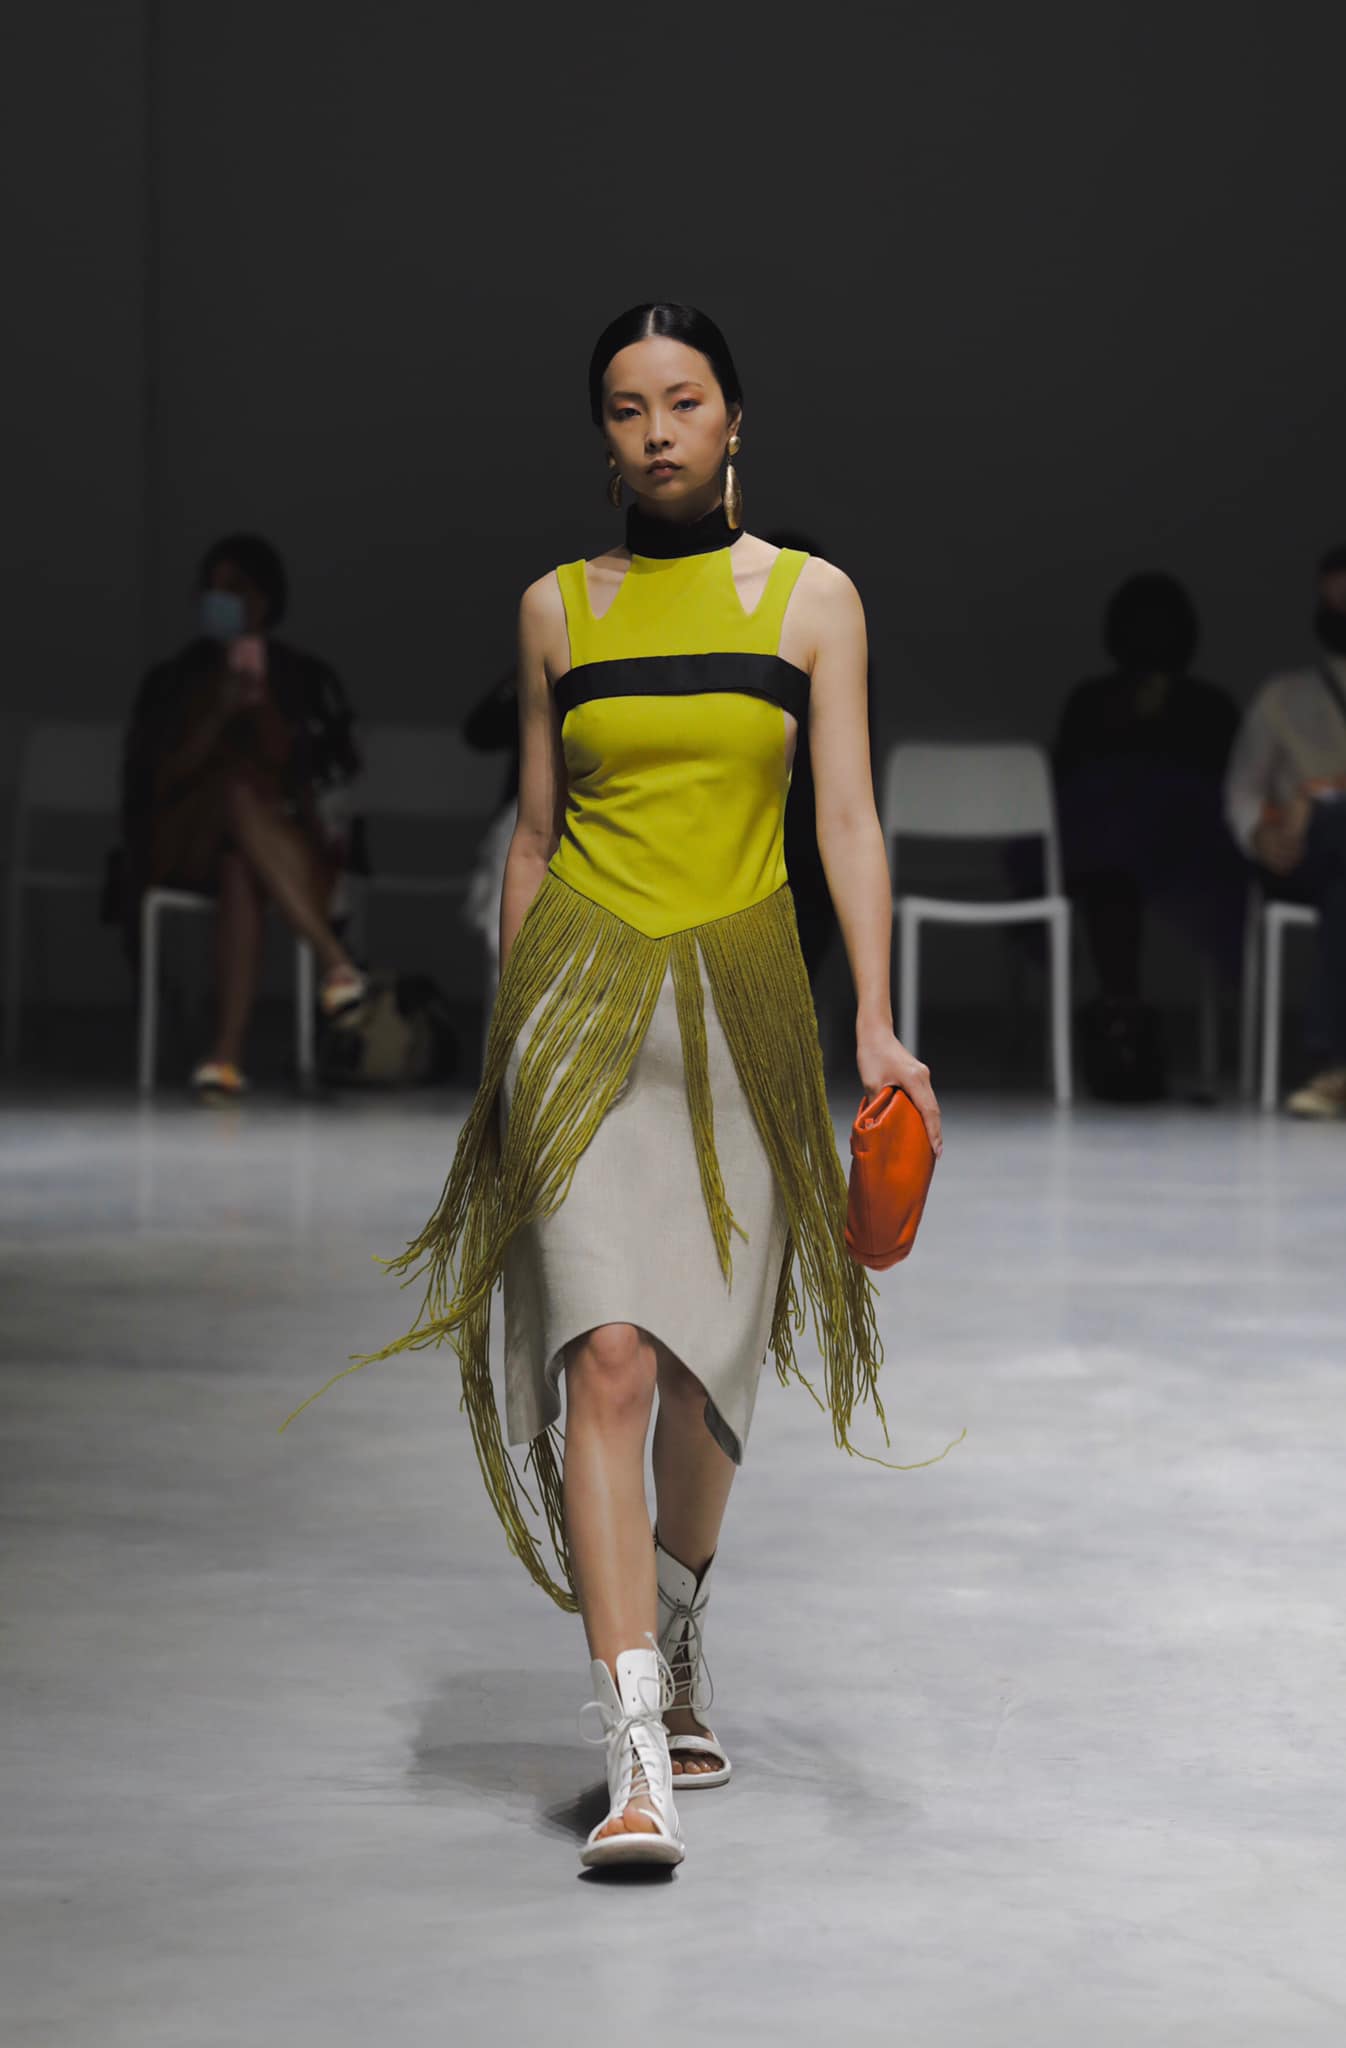 Chàng trai gen Z tâm sự sau show diễn tại Milan Fashion Week: 'Không dám nhận là NTK, muốn thiết kế đồ cho ca sĩ Hồ Ngọc Hà' - ảnh 4